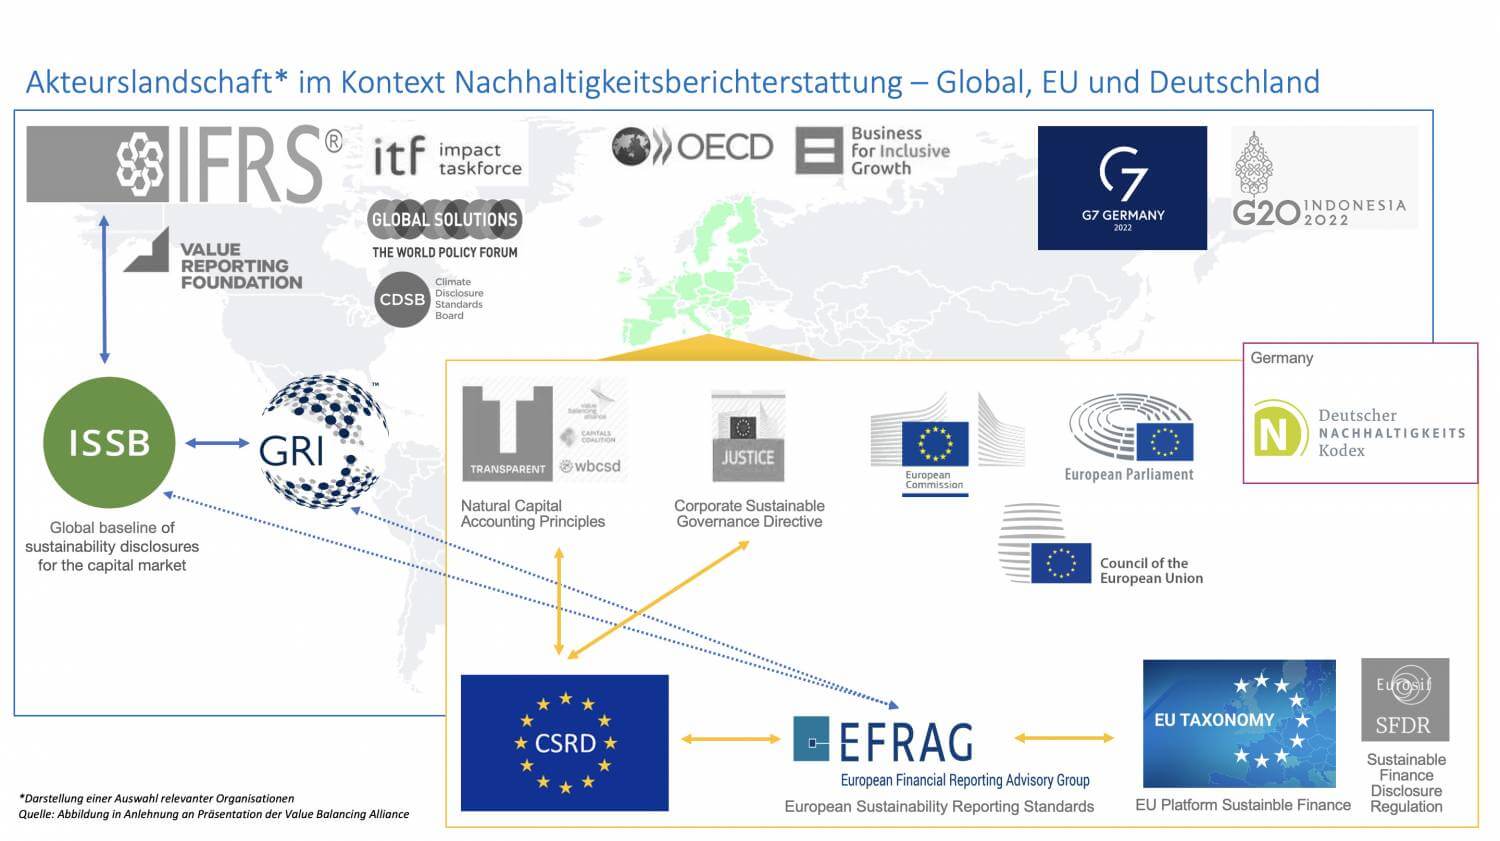 Akteurslandschaft im Kontext Nachhaltigkeitsberichterstattung (CSDR) – Global, EU und Deutschland